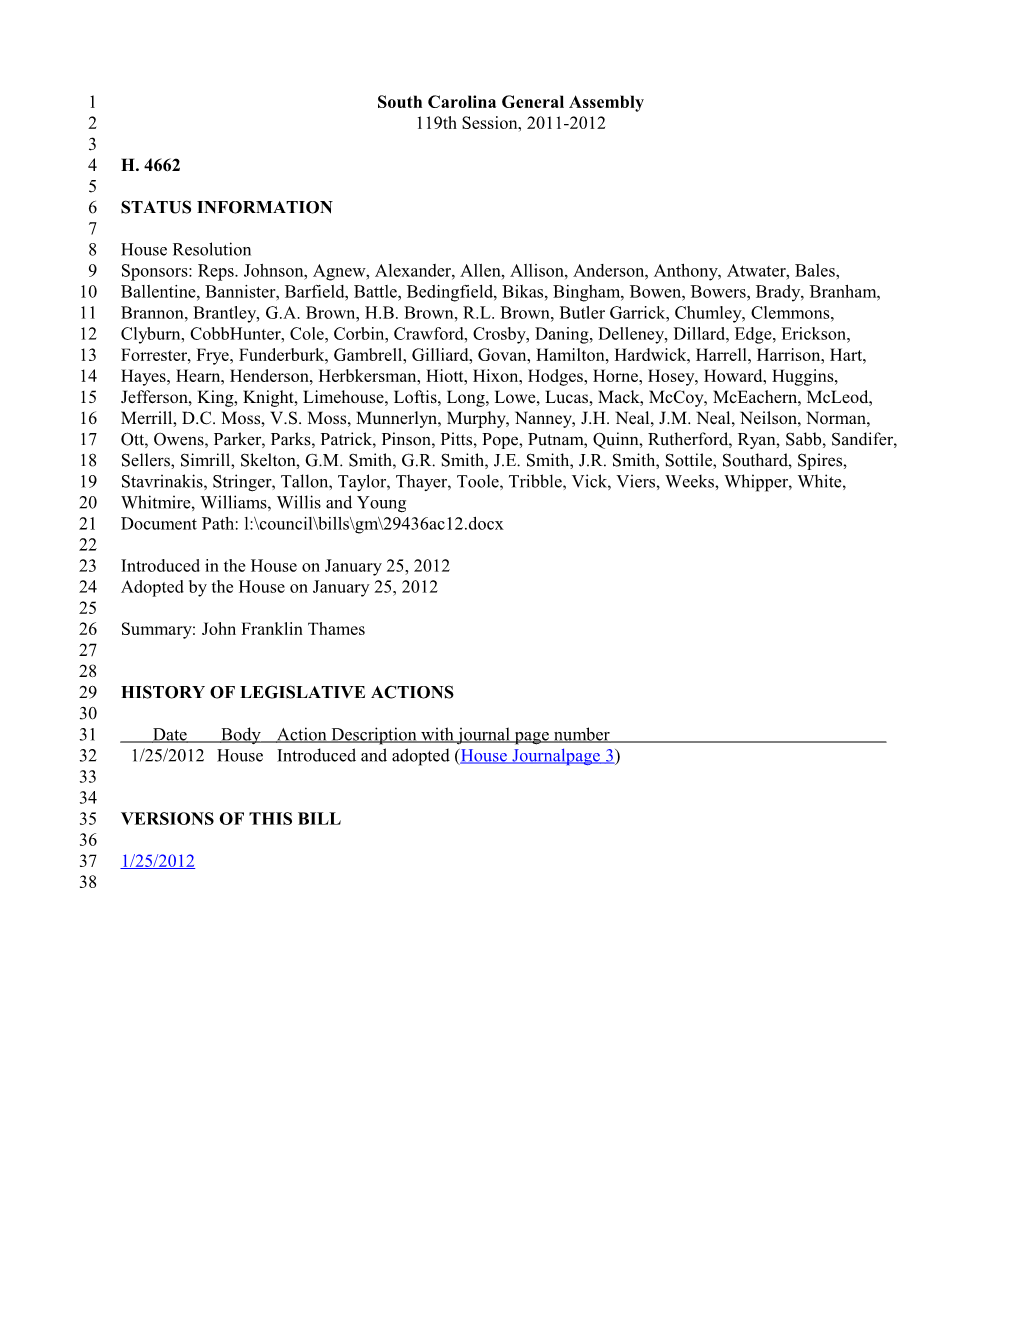 2011-2012 Bill 4662: John Franklin Thames - South Carolina Legislature Online